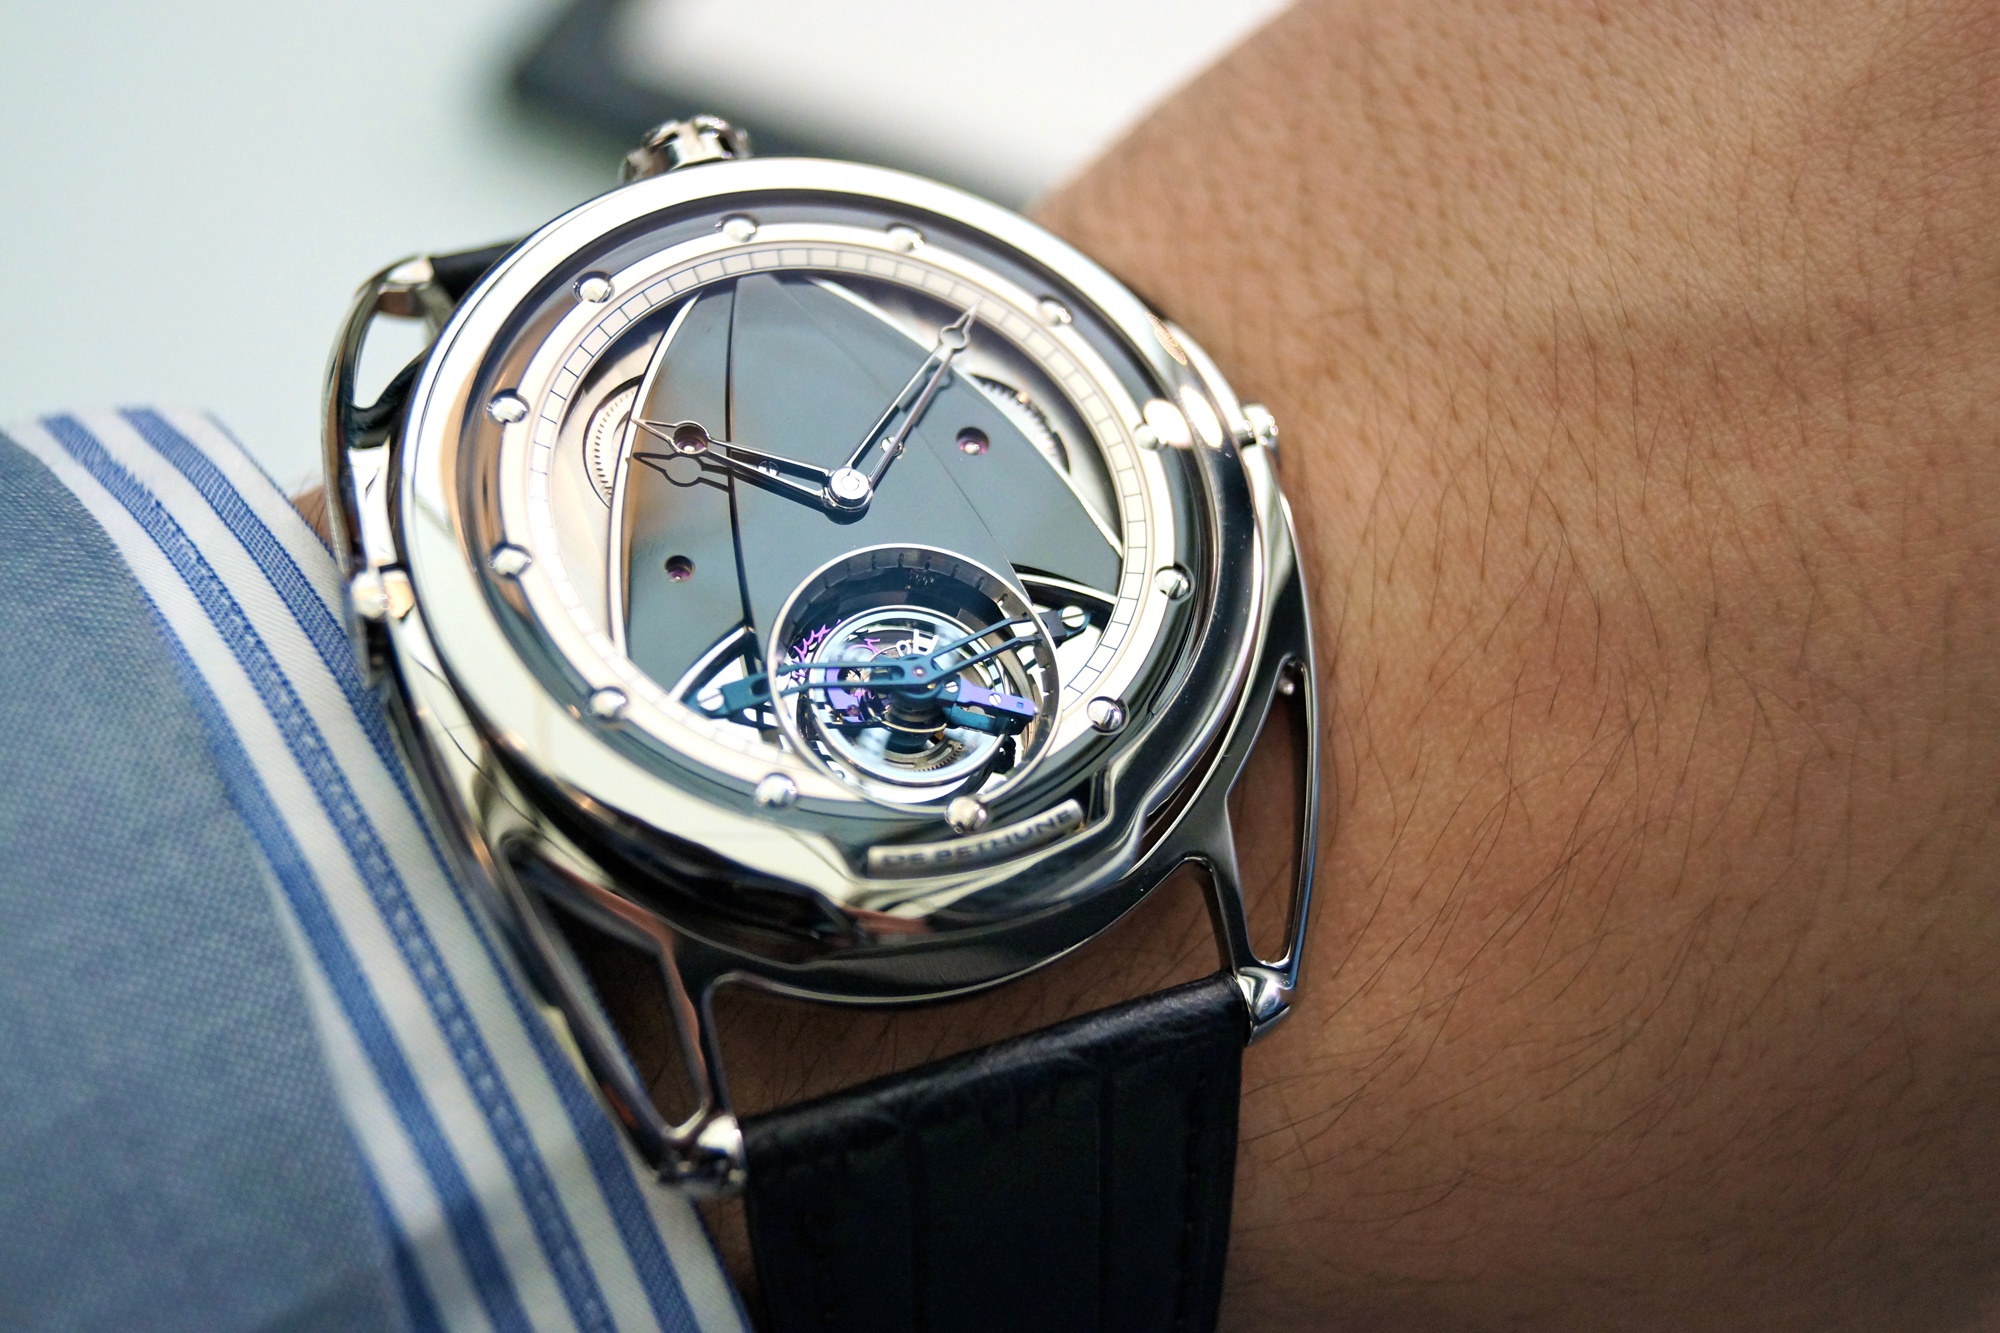 Αυτό είναι το ρολόι που κοστίζει 300.000 ευρώ αλλά… δεν δείχνει την ώρα (βίντεο)